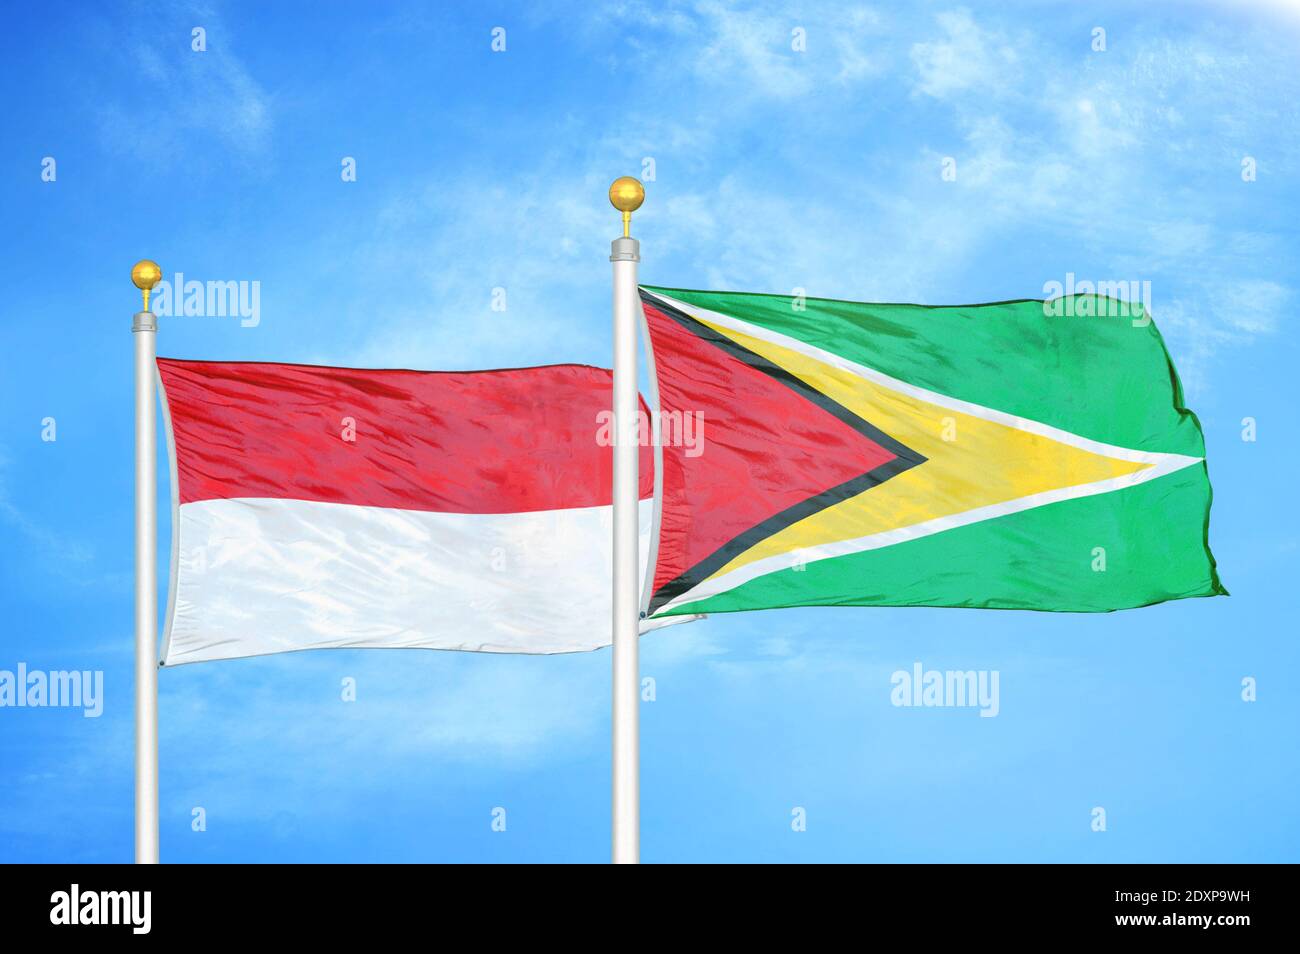 Indonesien und Guyana zwei Flaggen auf Fahnenmasten und blau bewölkt Himmel Stockfoto